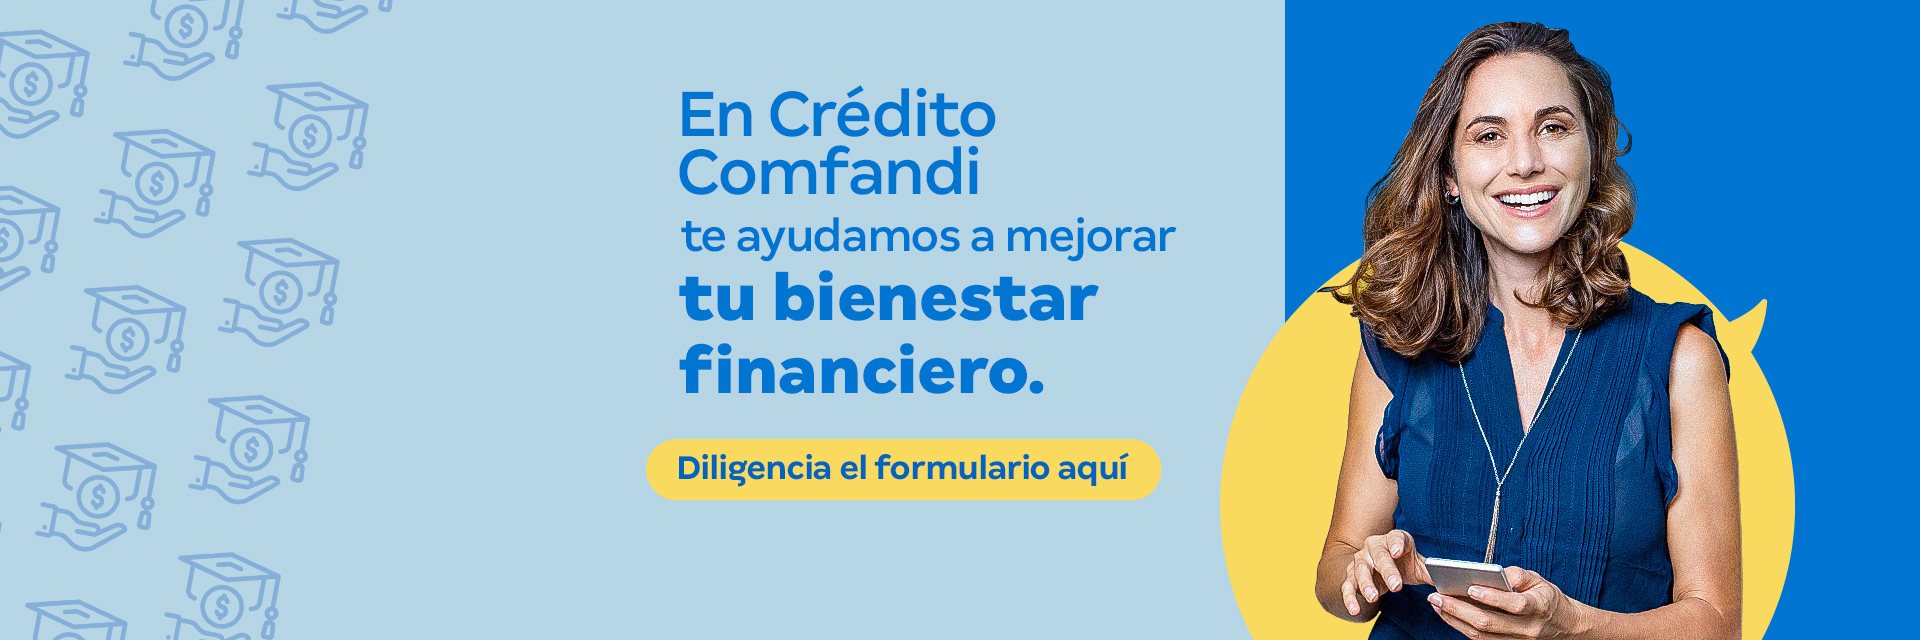 banner educacion Financiera